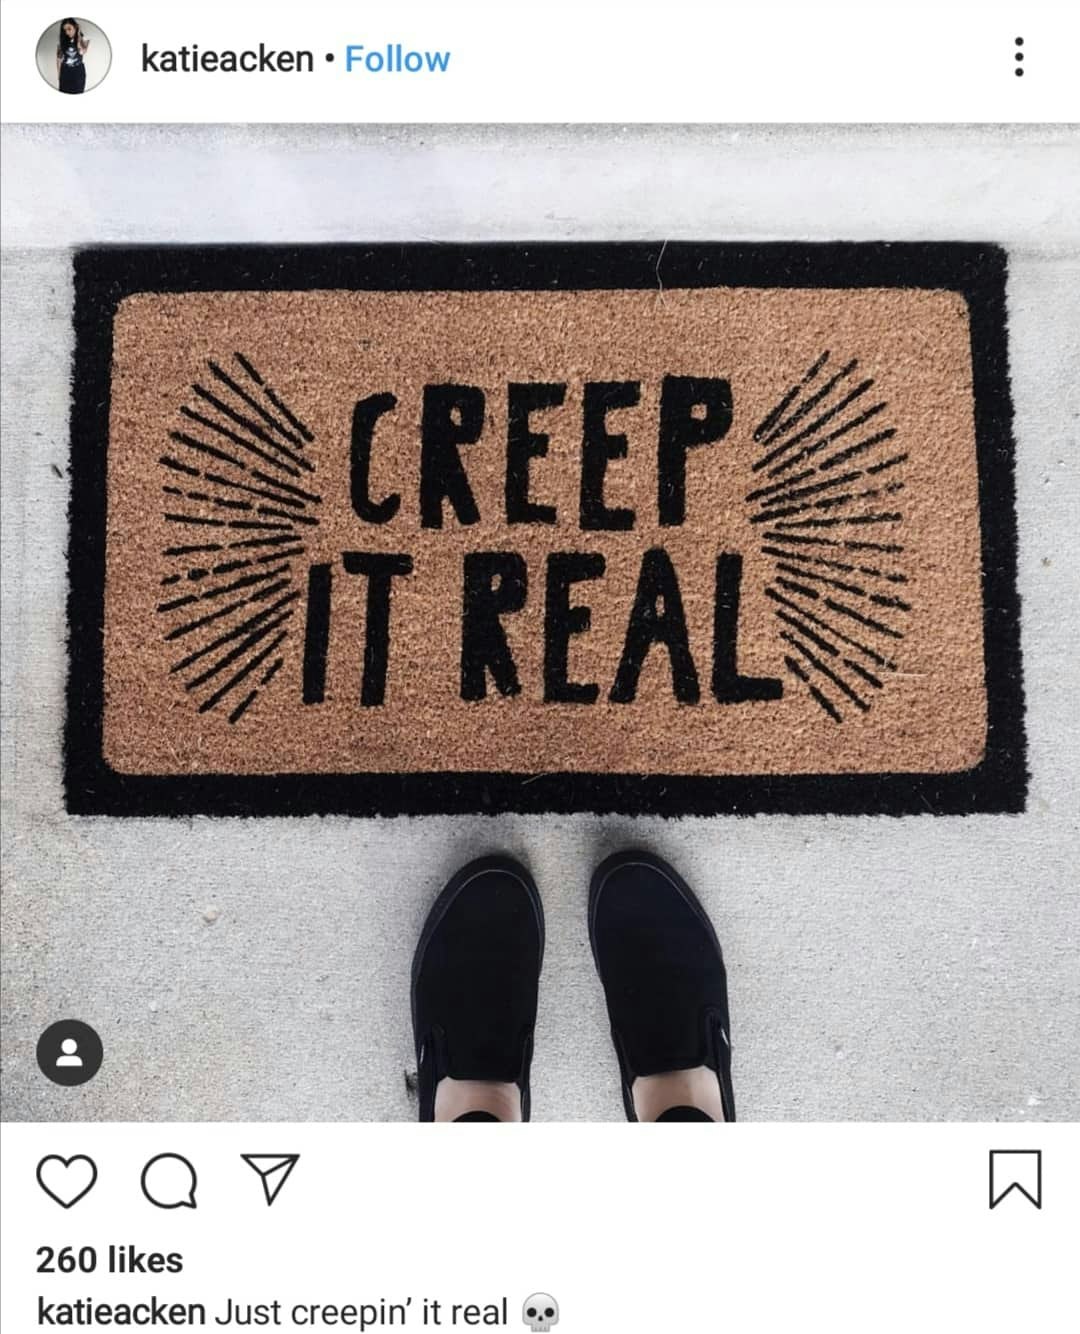 Halloween Instagram Captions